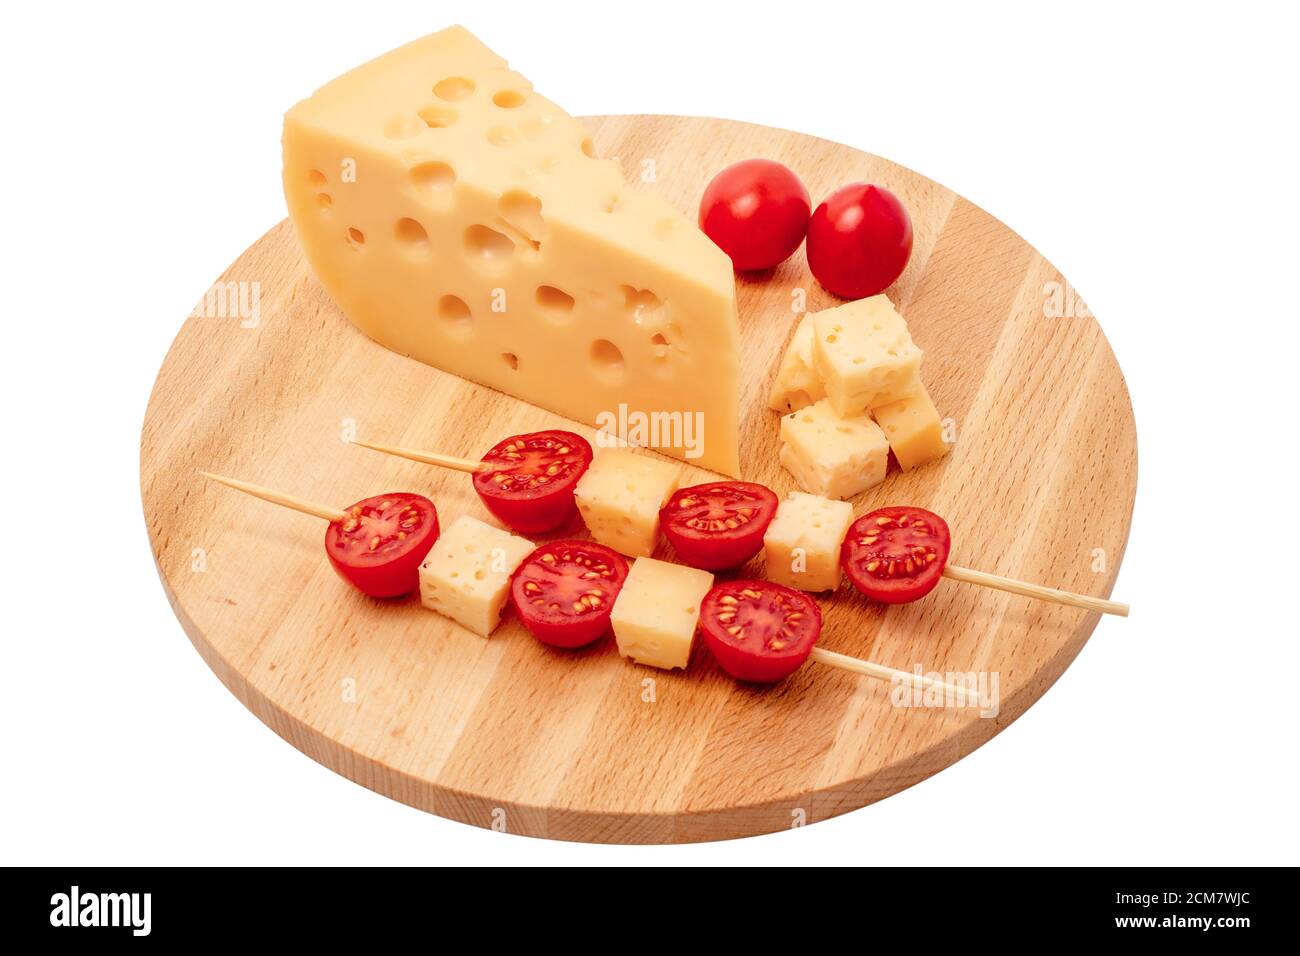 pezzo di formaggio e spiedini di formaggio con pomodoro su tavola di legno, pezzo di formaggio triangolare, formaggio con fori ritagliati su sfondo bianco Foto Stock